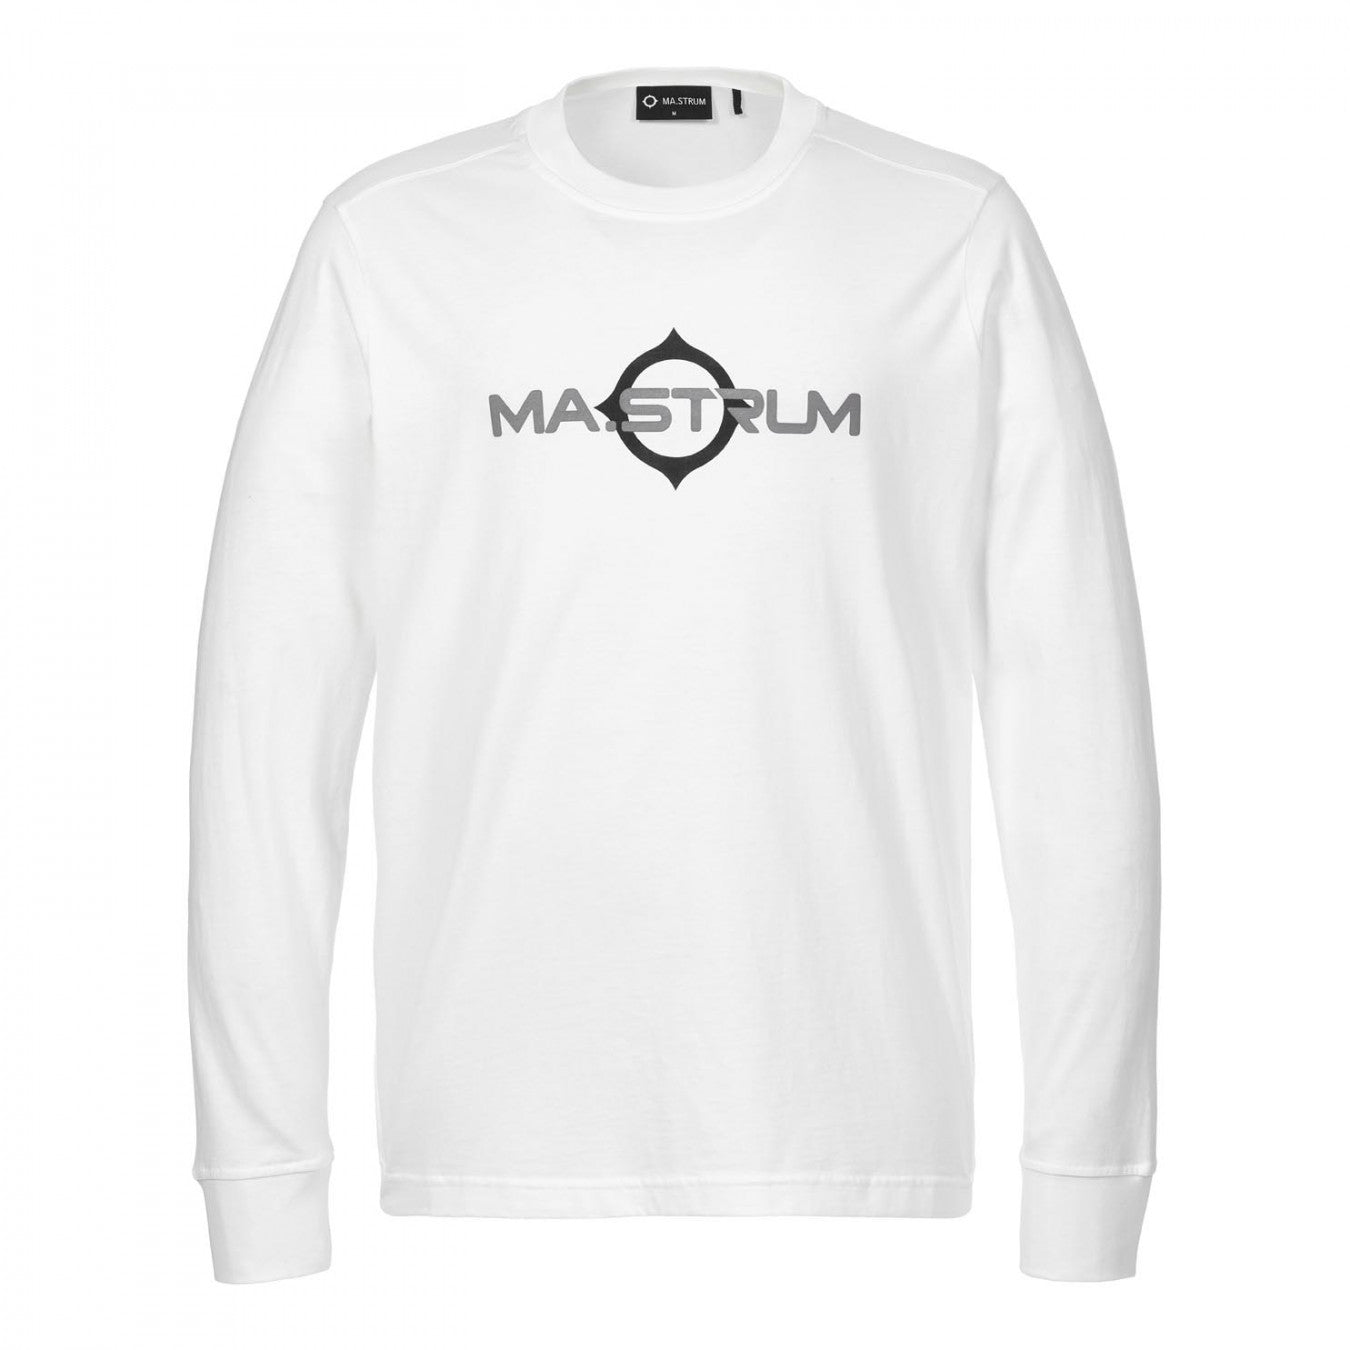 Mastrum Mastrum T-shirt - Wit